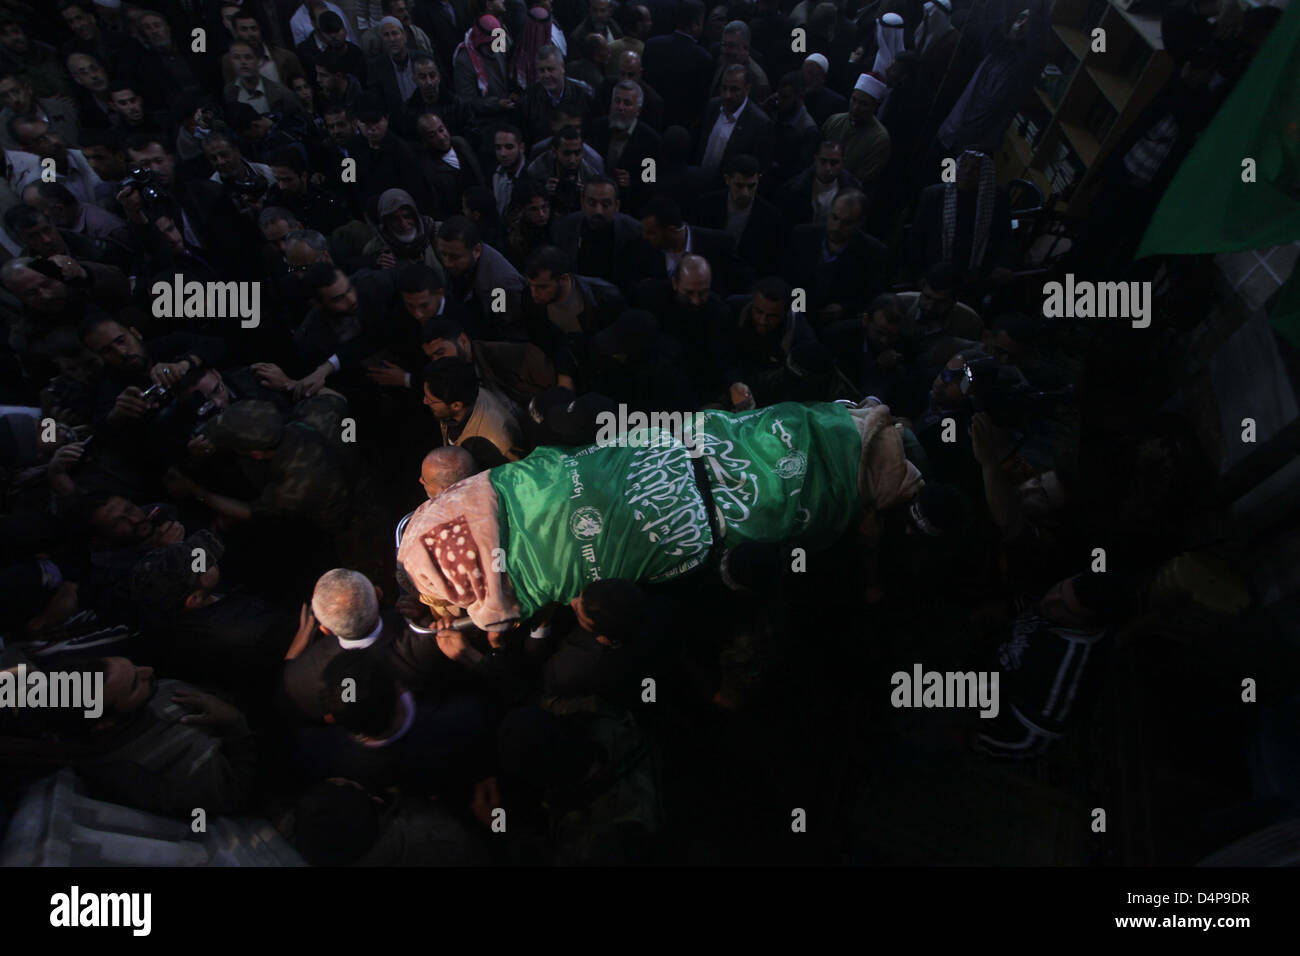 Mar 17, 2013 - La ville de Gaza, bande de Gaza - Le Hamas militants entourent le corps de femelle du Hamas législateur Mariam Farahat lors de ses funérailles à la mosquée al-Omari, dans la ville de Gaza. Farahat, qui est devenu une icône pour les femmes palestiniennes à Gaza pour perdre trois de ses fils dans le conflit israélo-palestinien, est décédé le dimanche après une longue lutte contre la maladie. (Crédit Image : ©/ZUMAPRESS.com) apaimages Banque D'Images